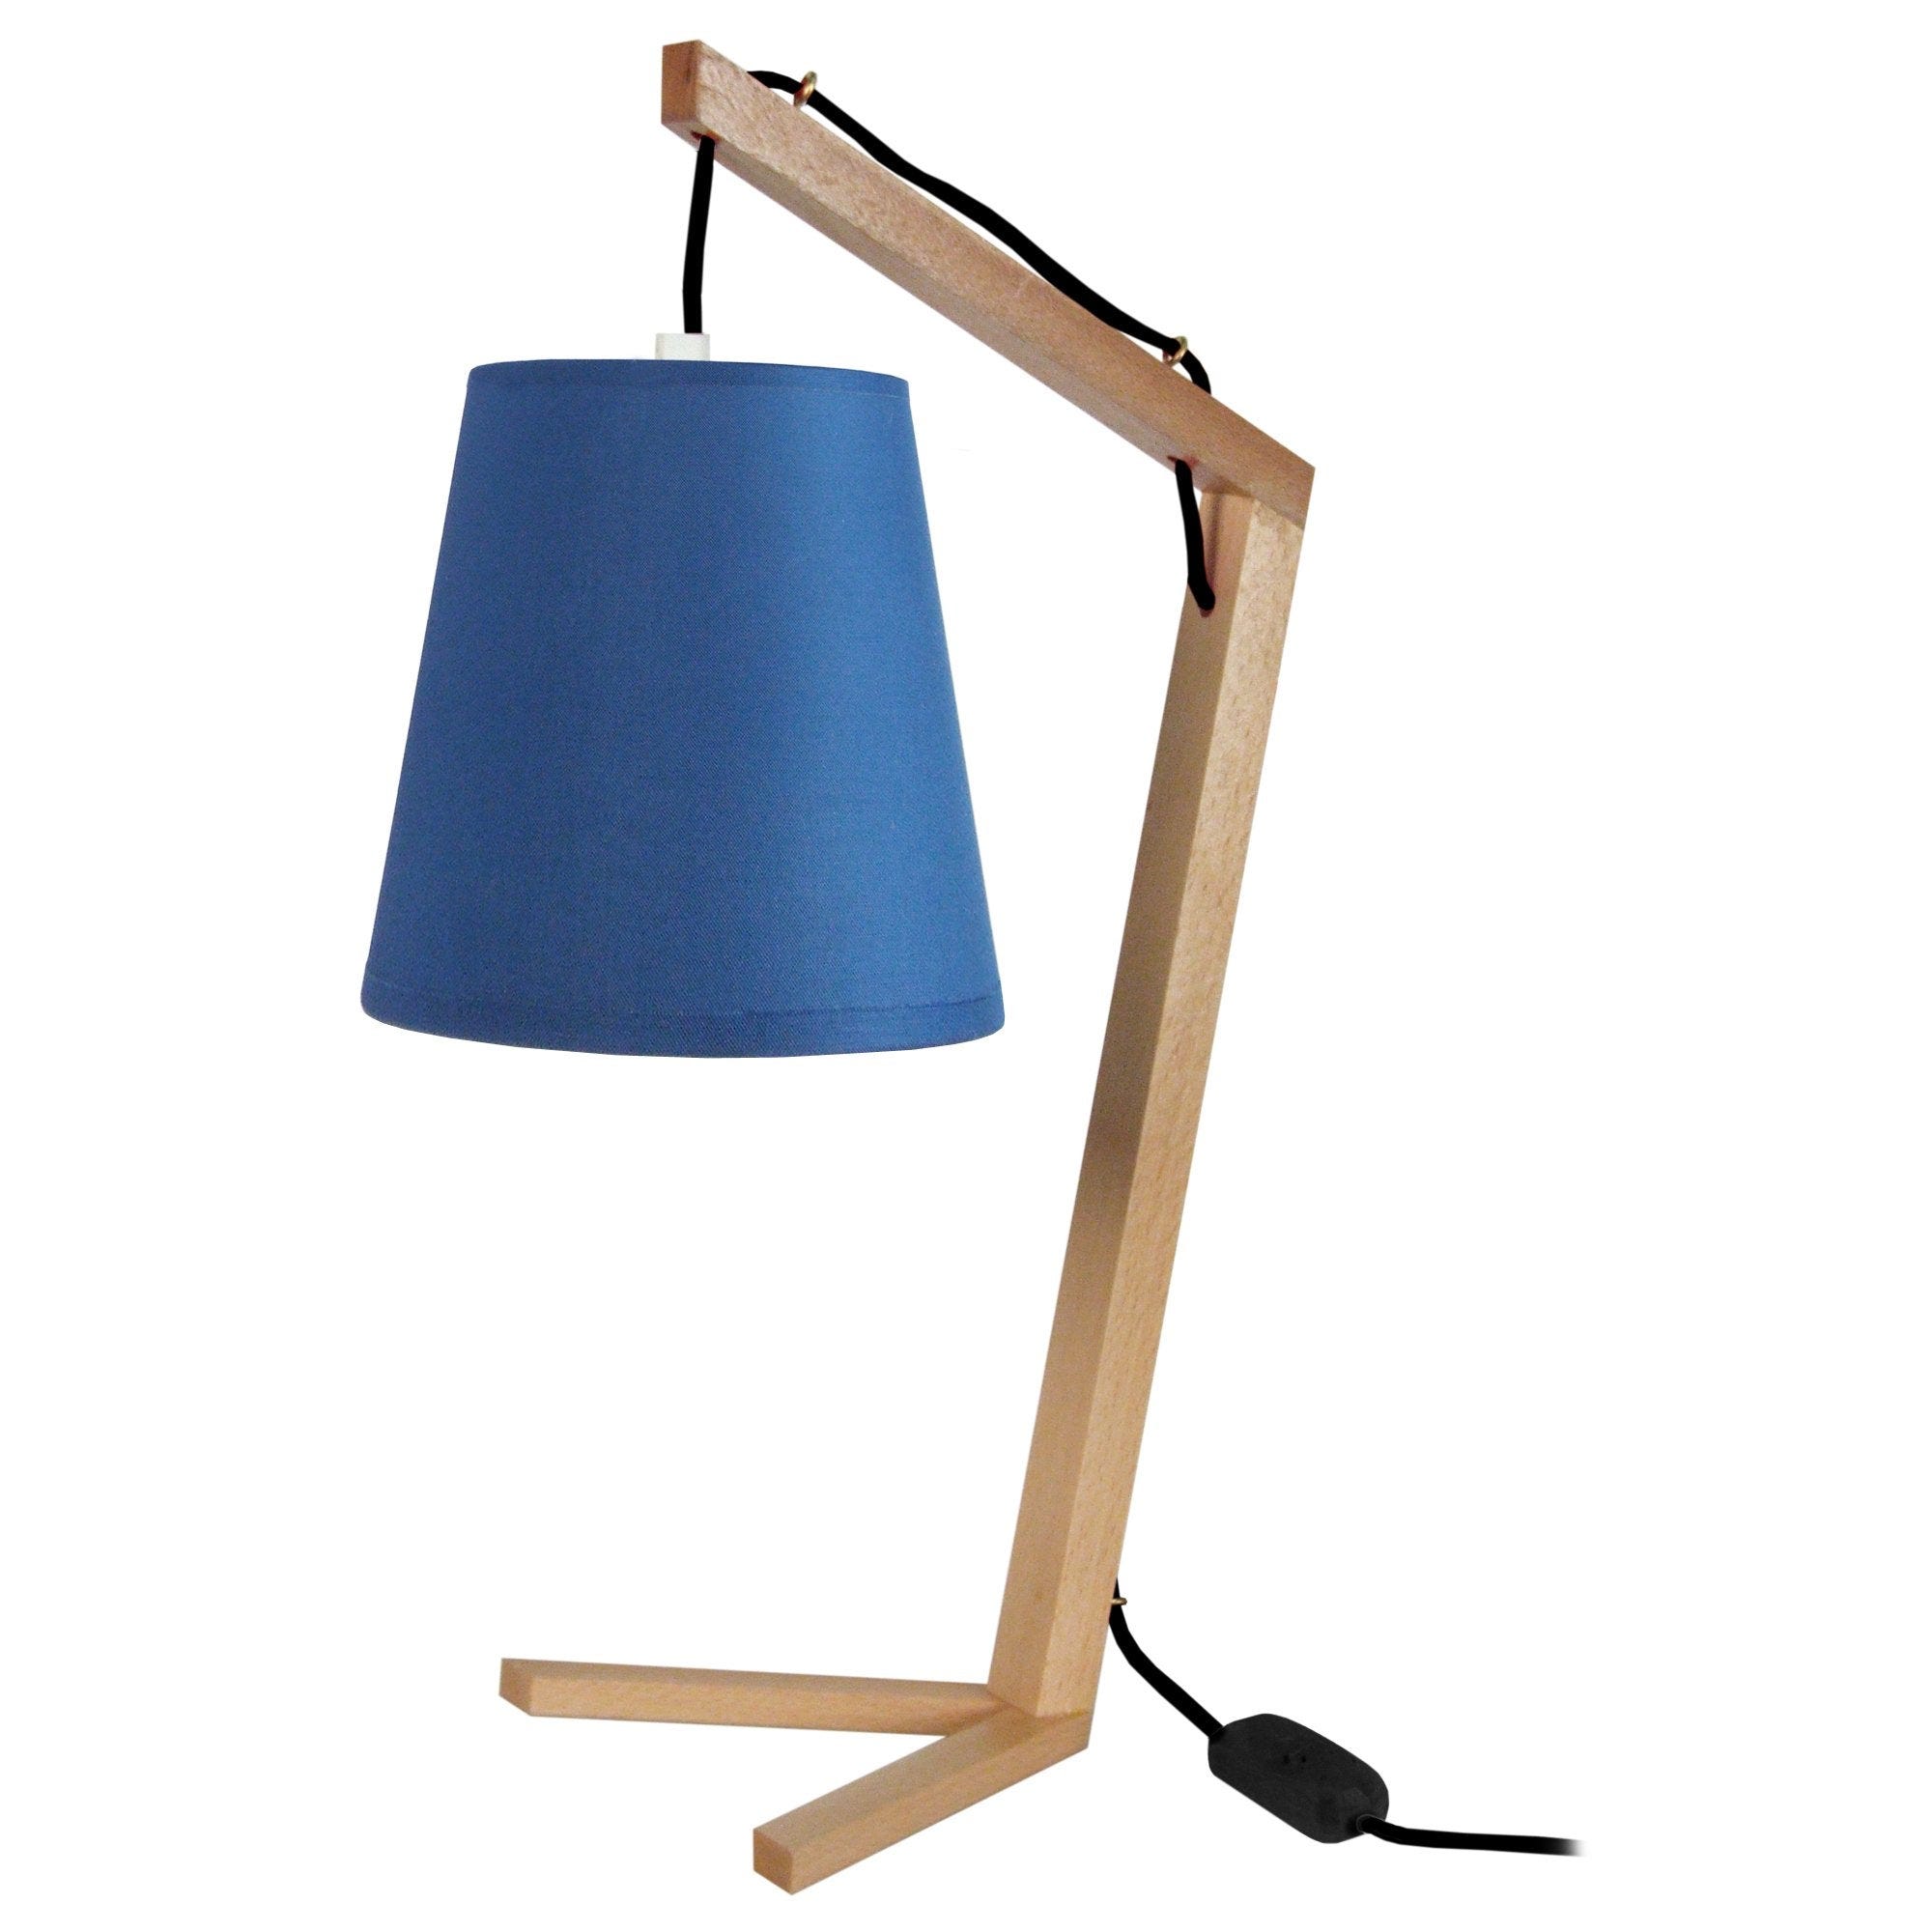 CHICKEN FOOT - Lampe de chevet arqué bois naturel et bleu